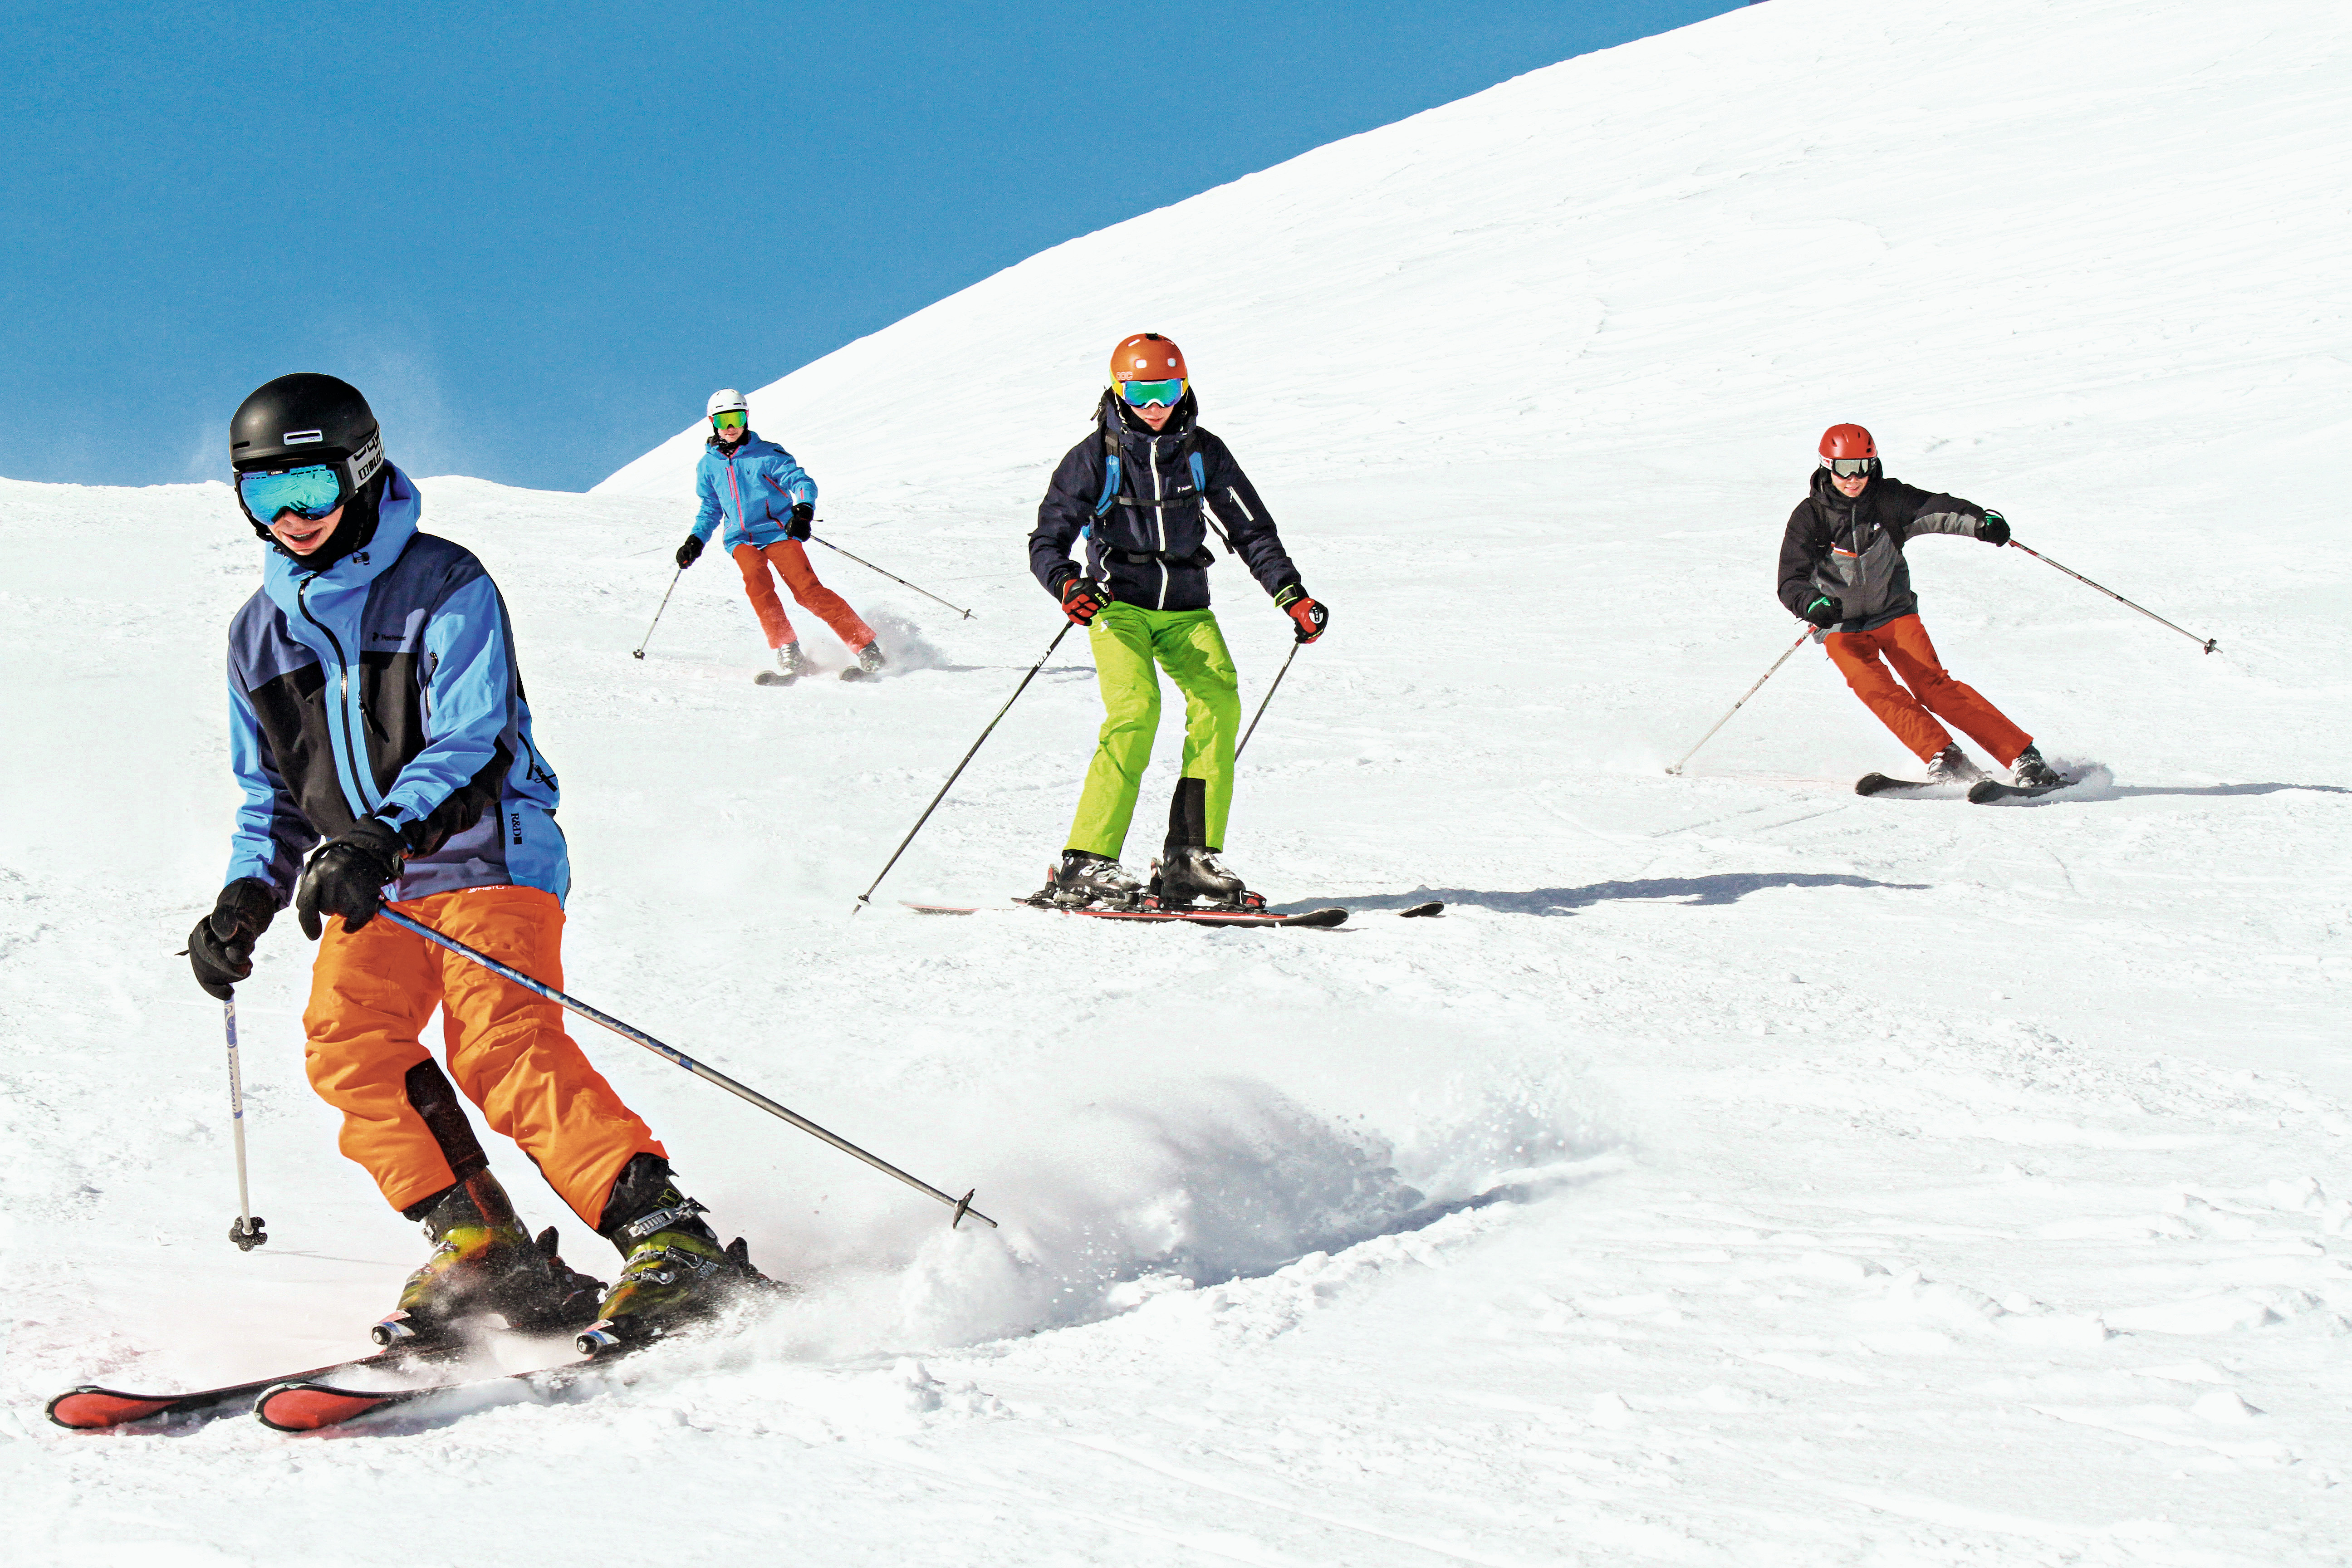 Les essentiels pour une longue journée de ski alpin